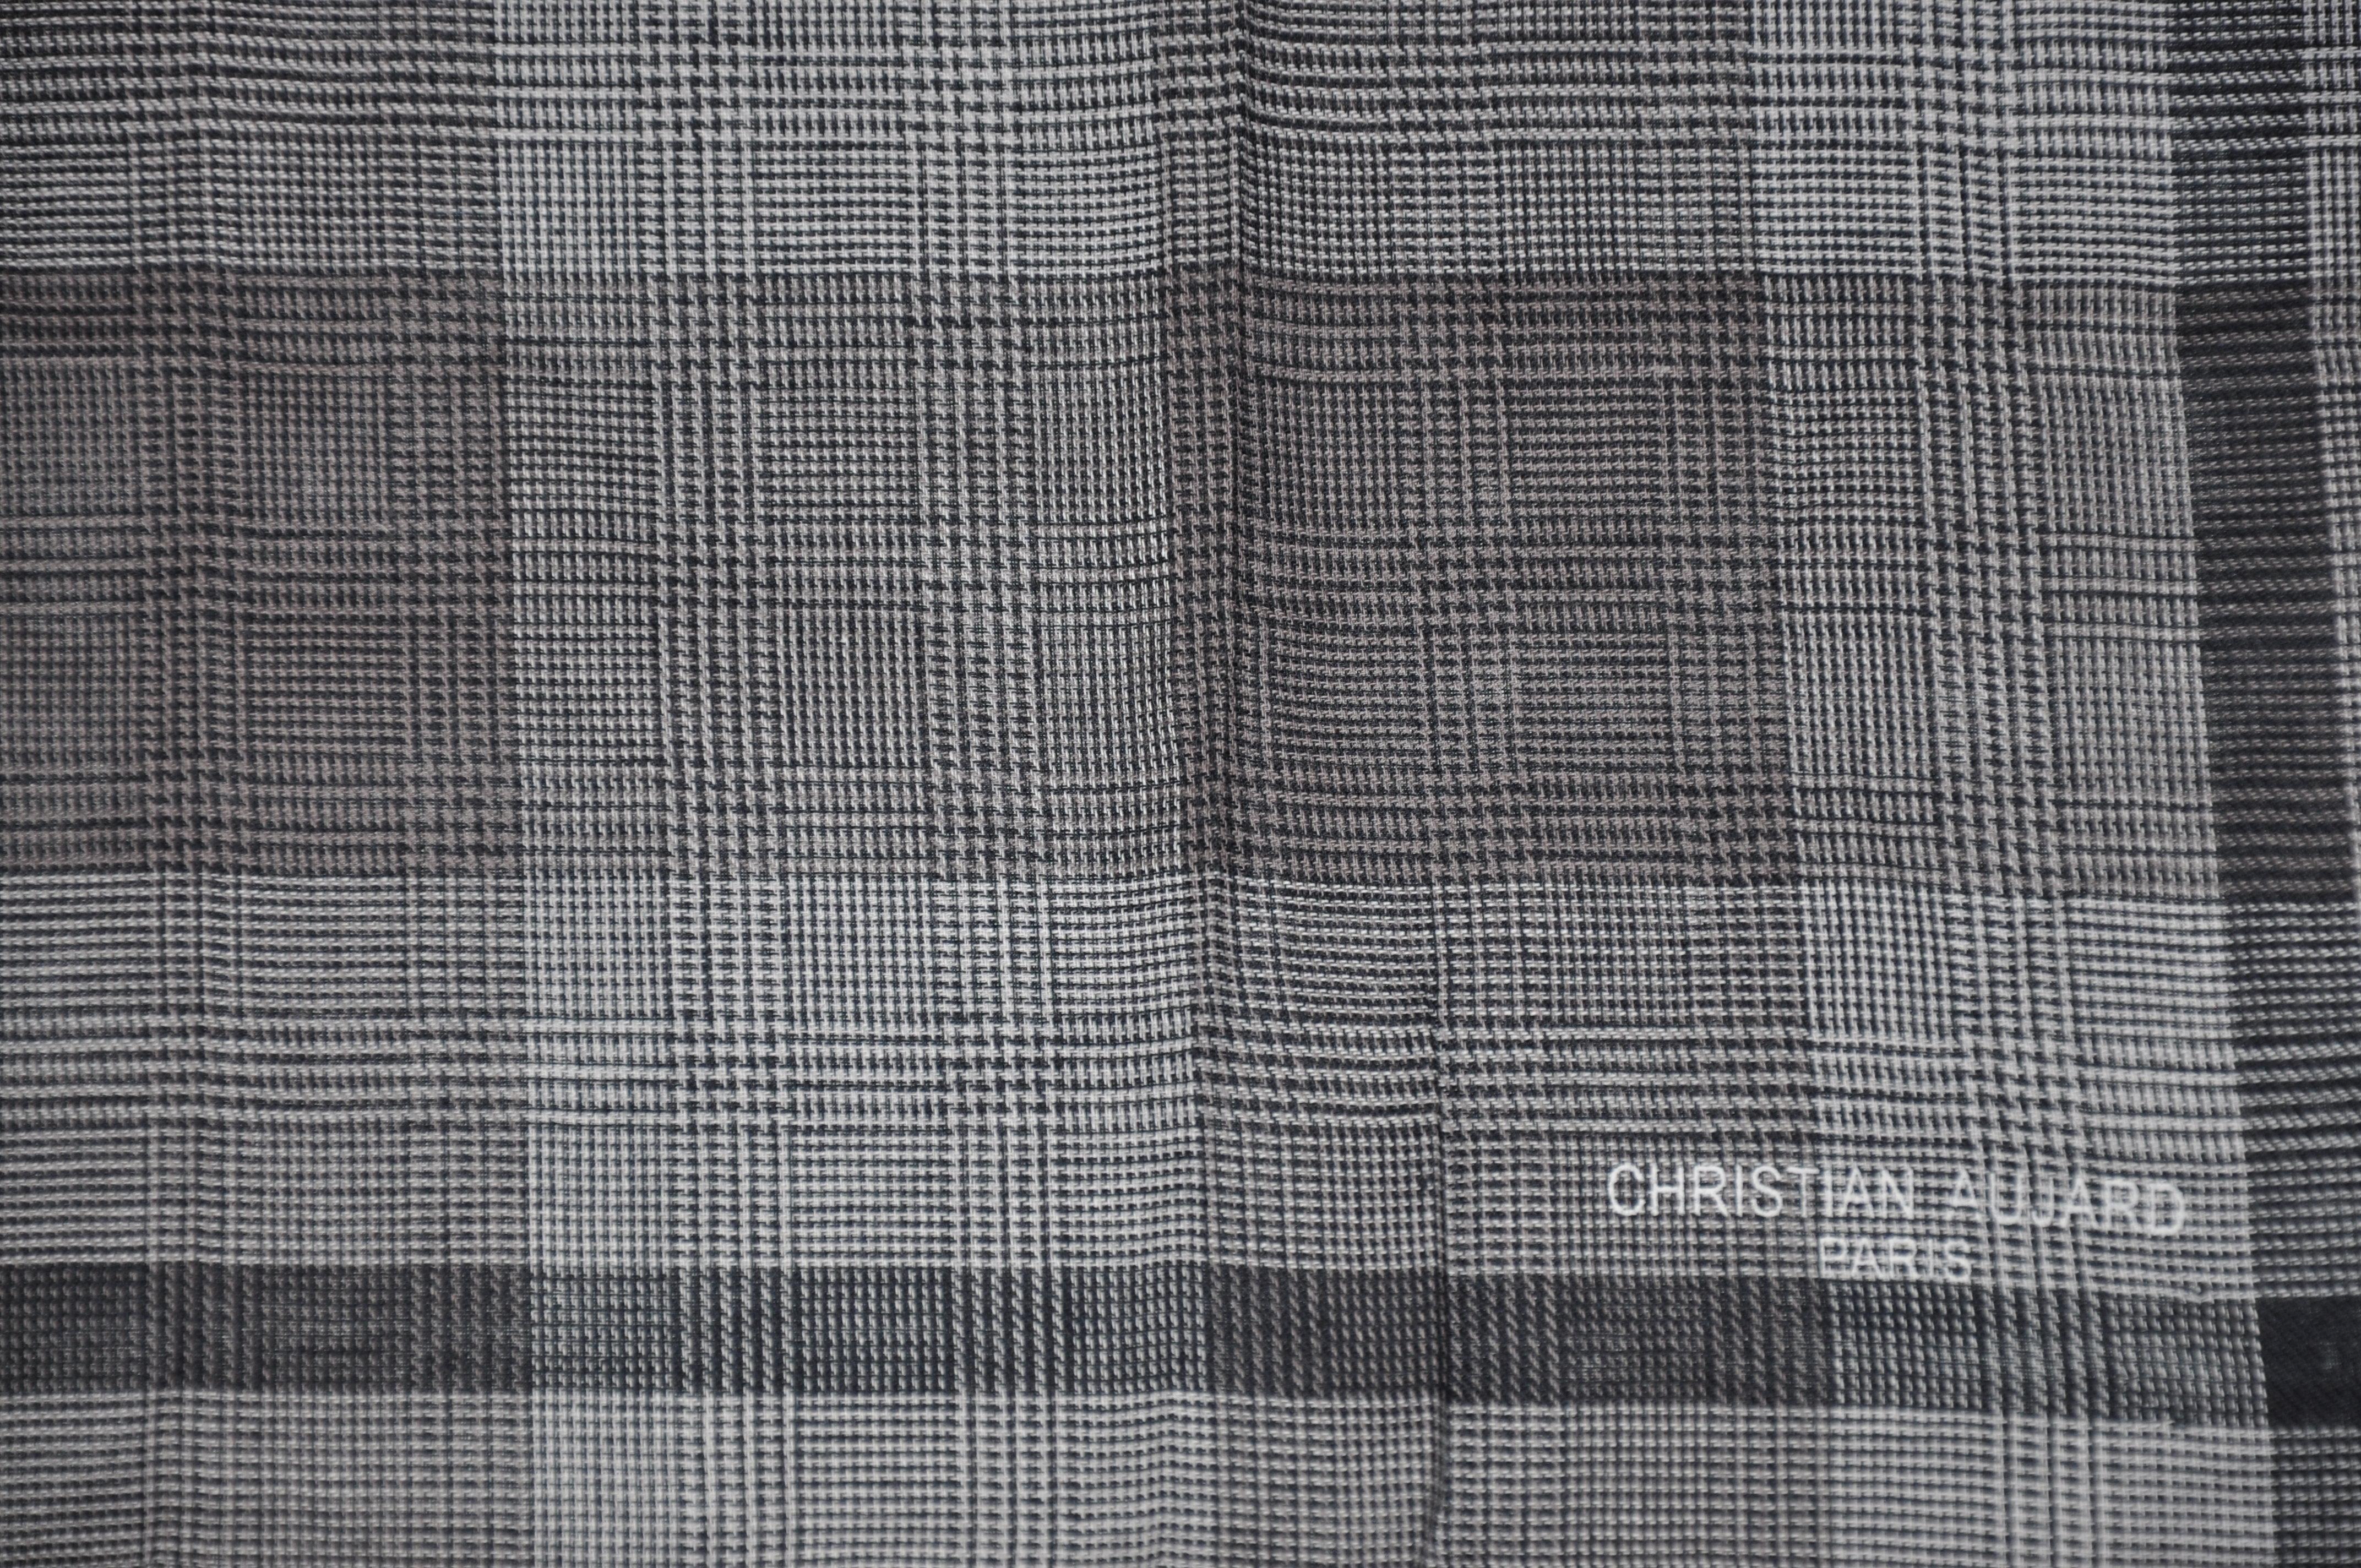 Christian Christian Aujard Taschentuch aus grauem Mikrokaro-Baumwoll in Schattierung (Grau) im Angebot